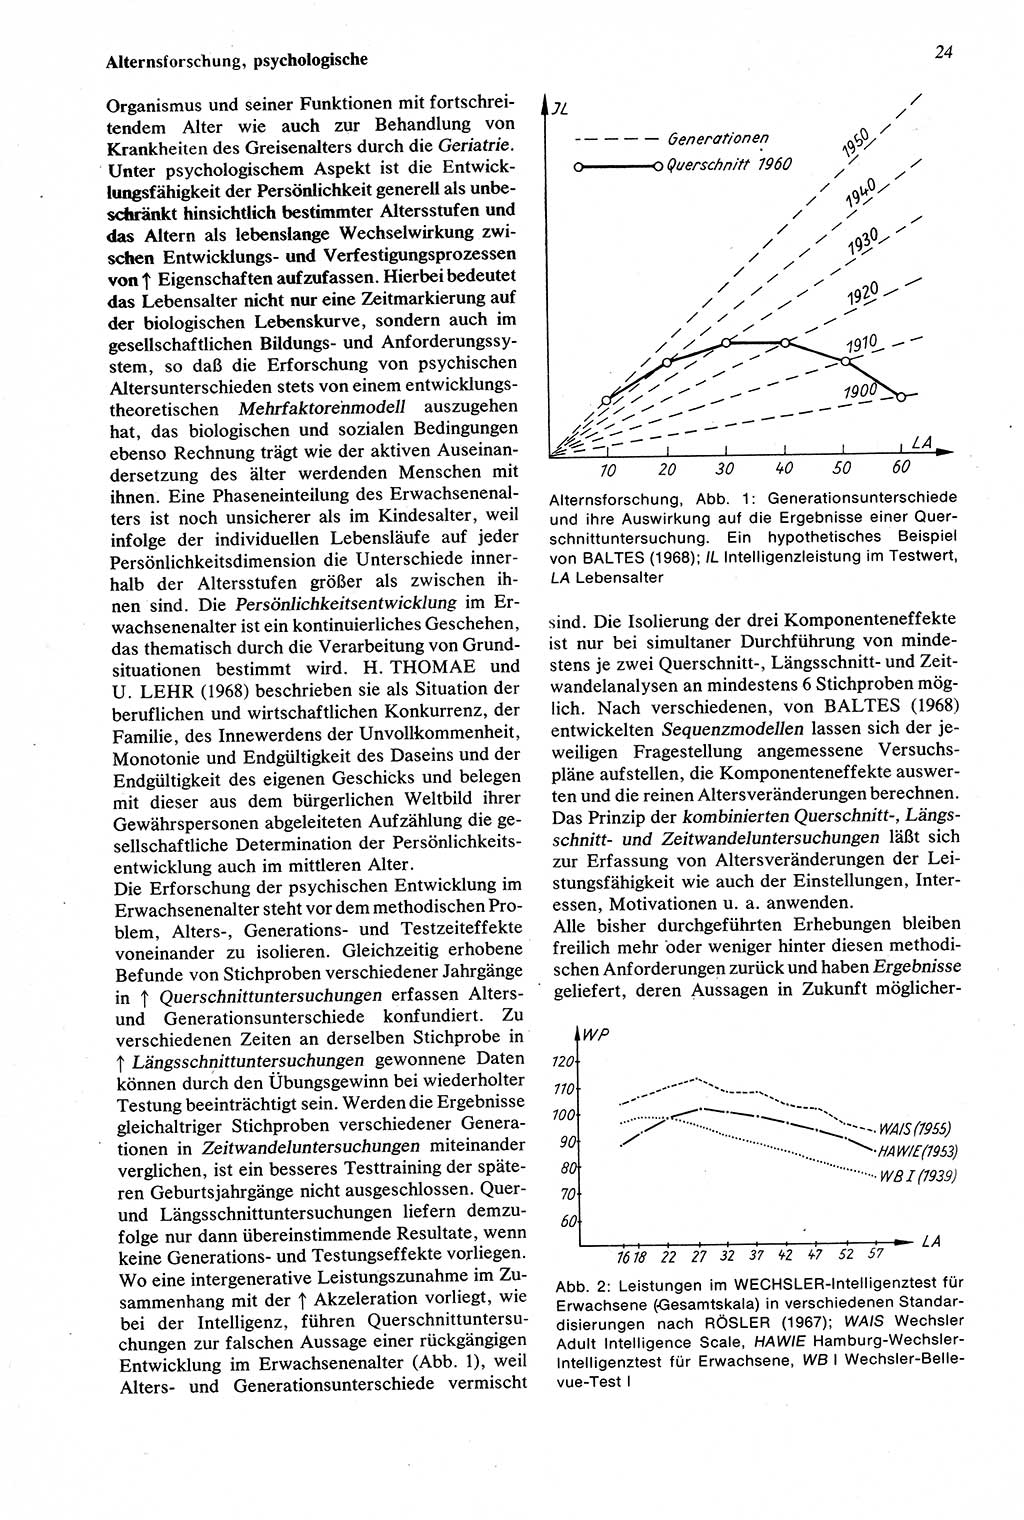 Wörterbuch der Psychologie [Deutsche Demokratische Republik (DDR)] 1976, Seite 24 (Wb. Psych. DDR 1976, S. 24)